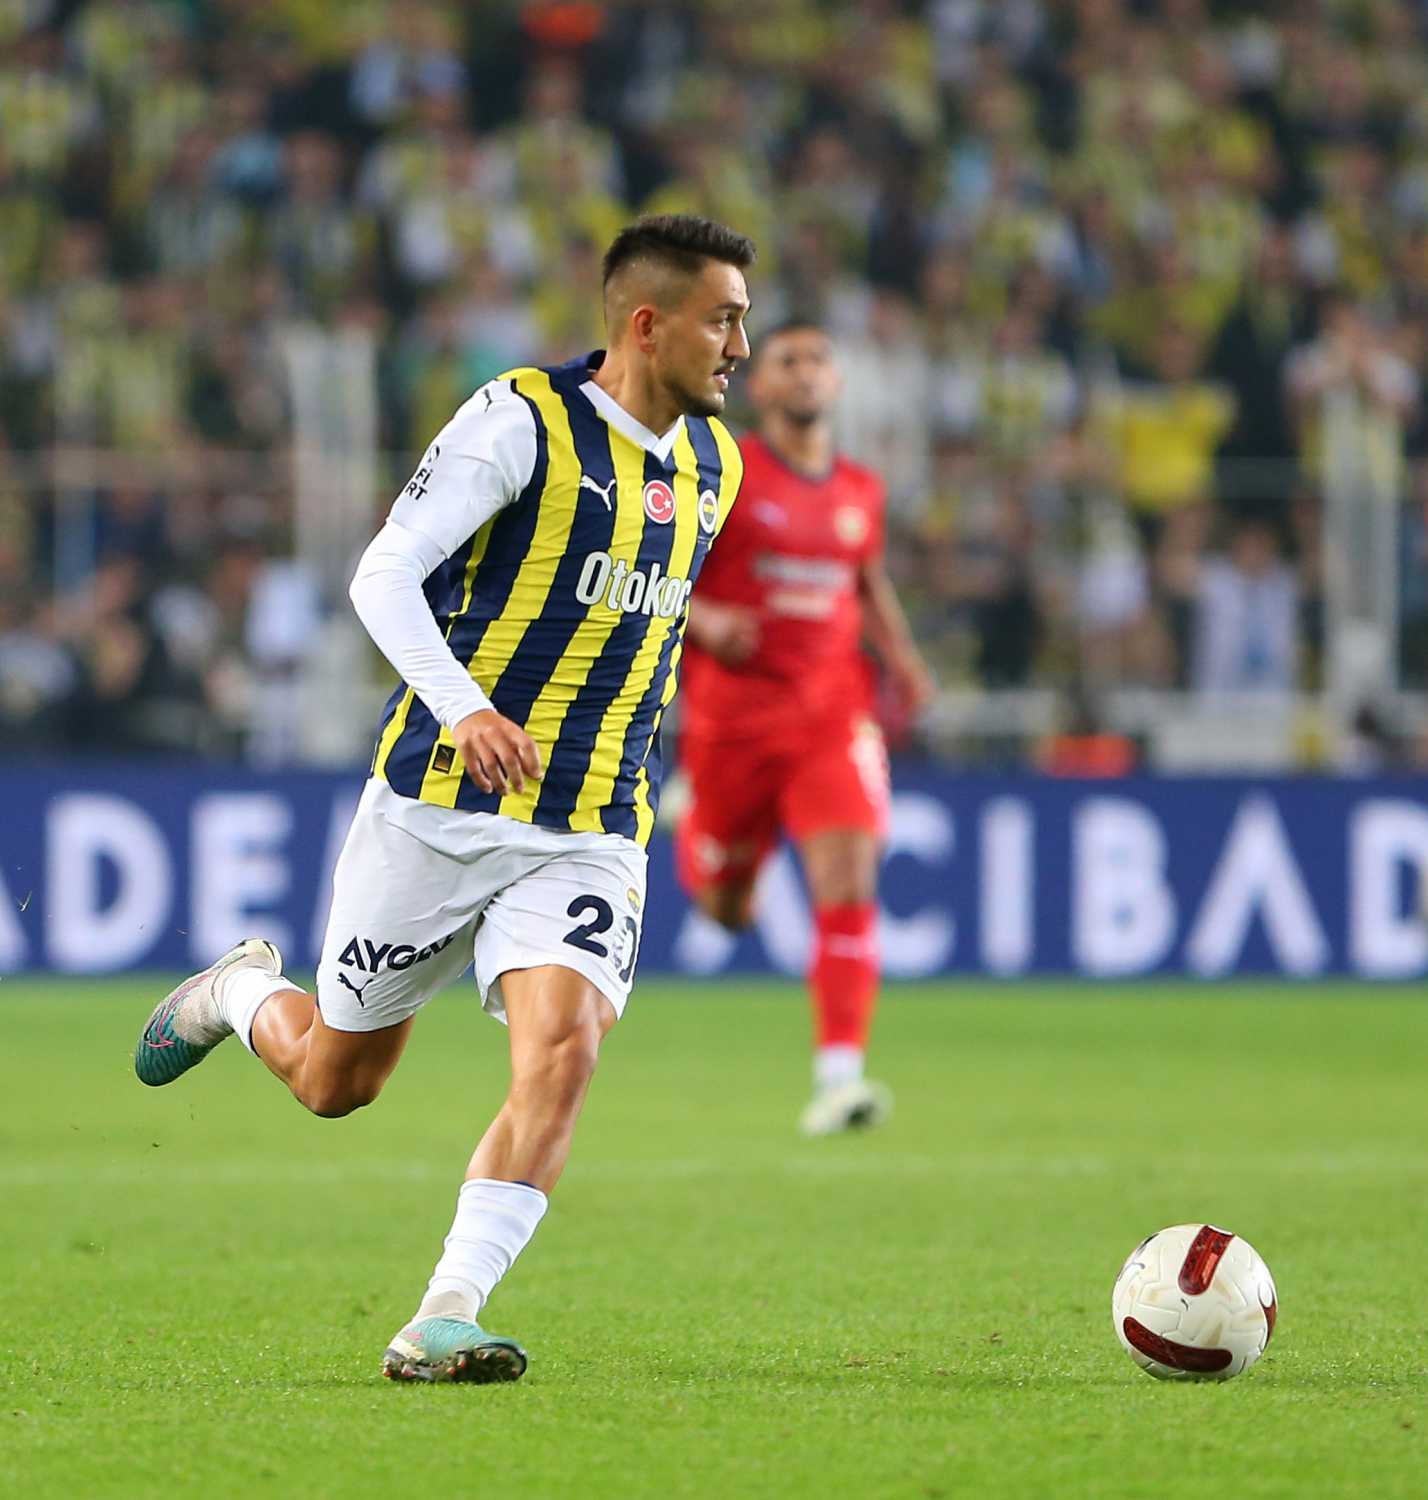 En değerli Türk futbolcular açıklandı! İşte listede yer alan isimler